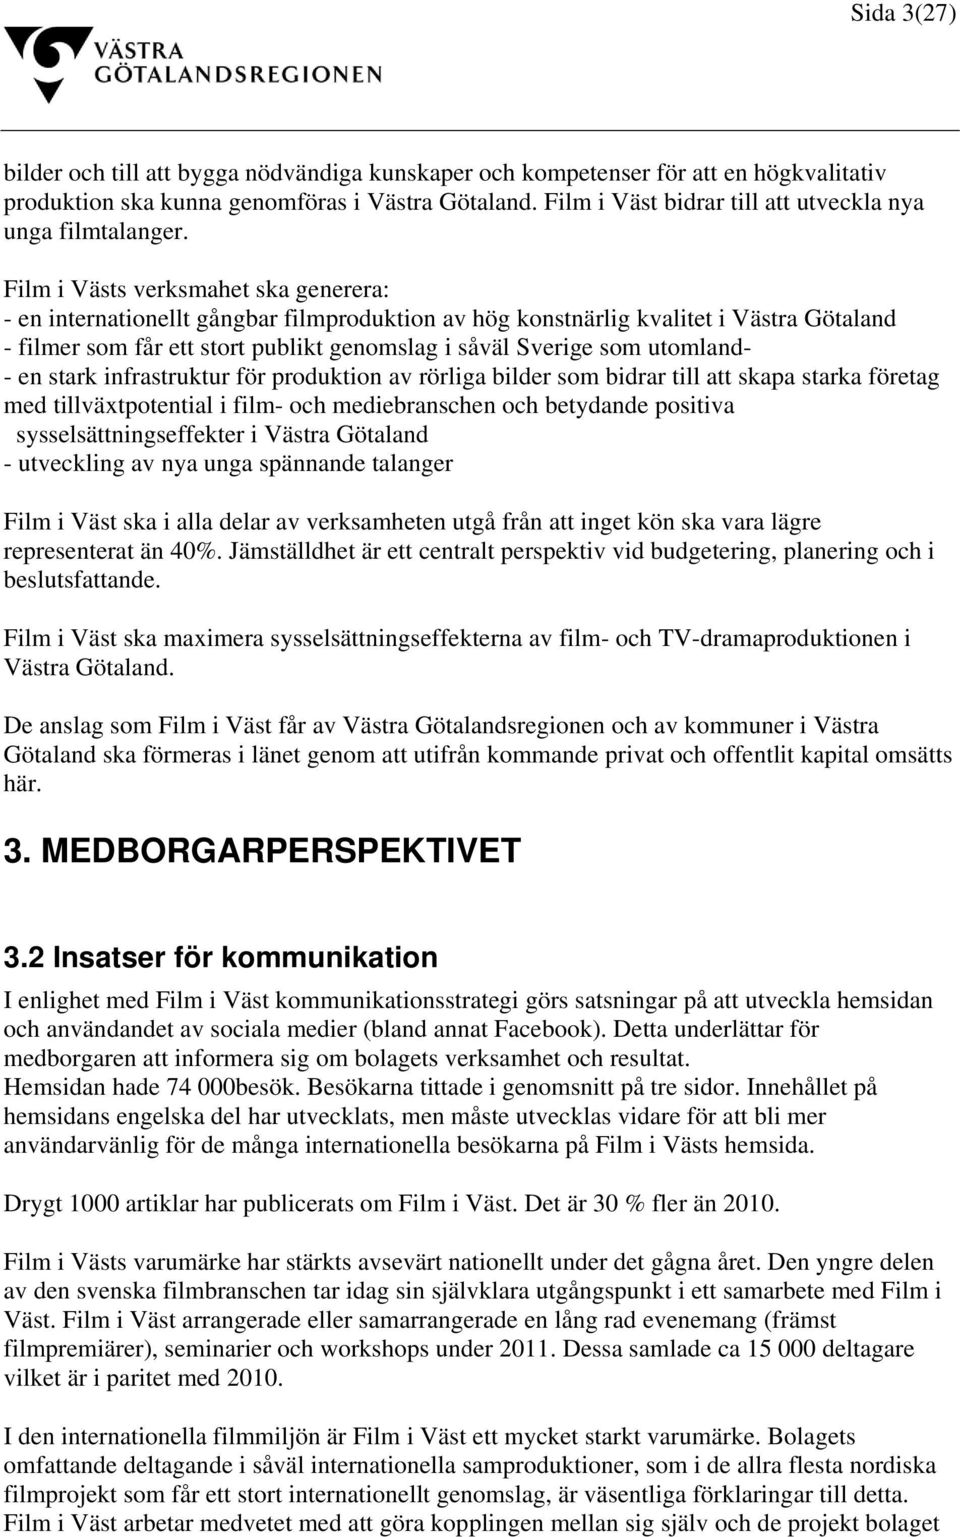 Film i Västs verksmahet ska generera: - en internationellt gångbar filmproduktion av hög konstnärlig kvalitet i Västra Götaland - filmer som får ett stort publikt genomslag i såväl Sverige som